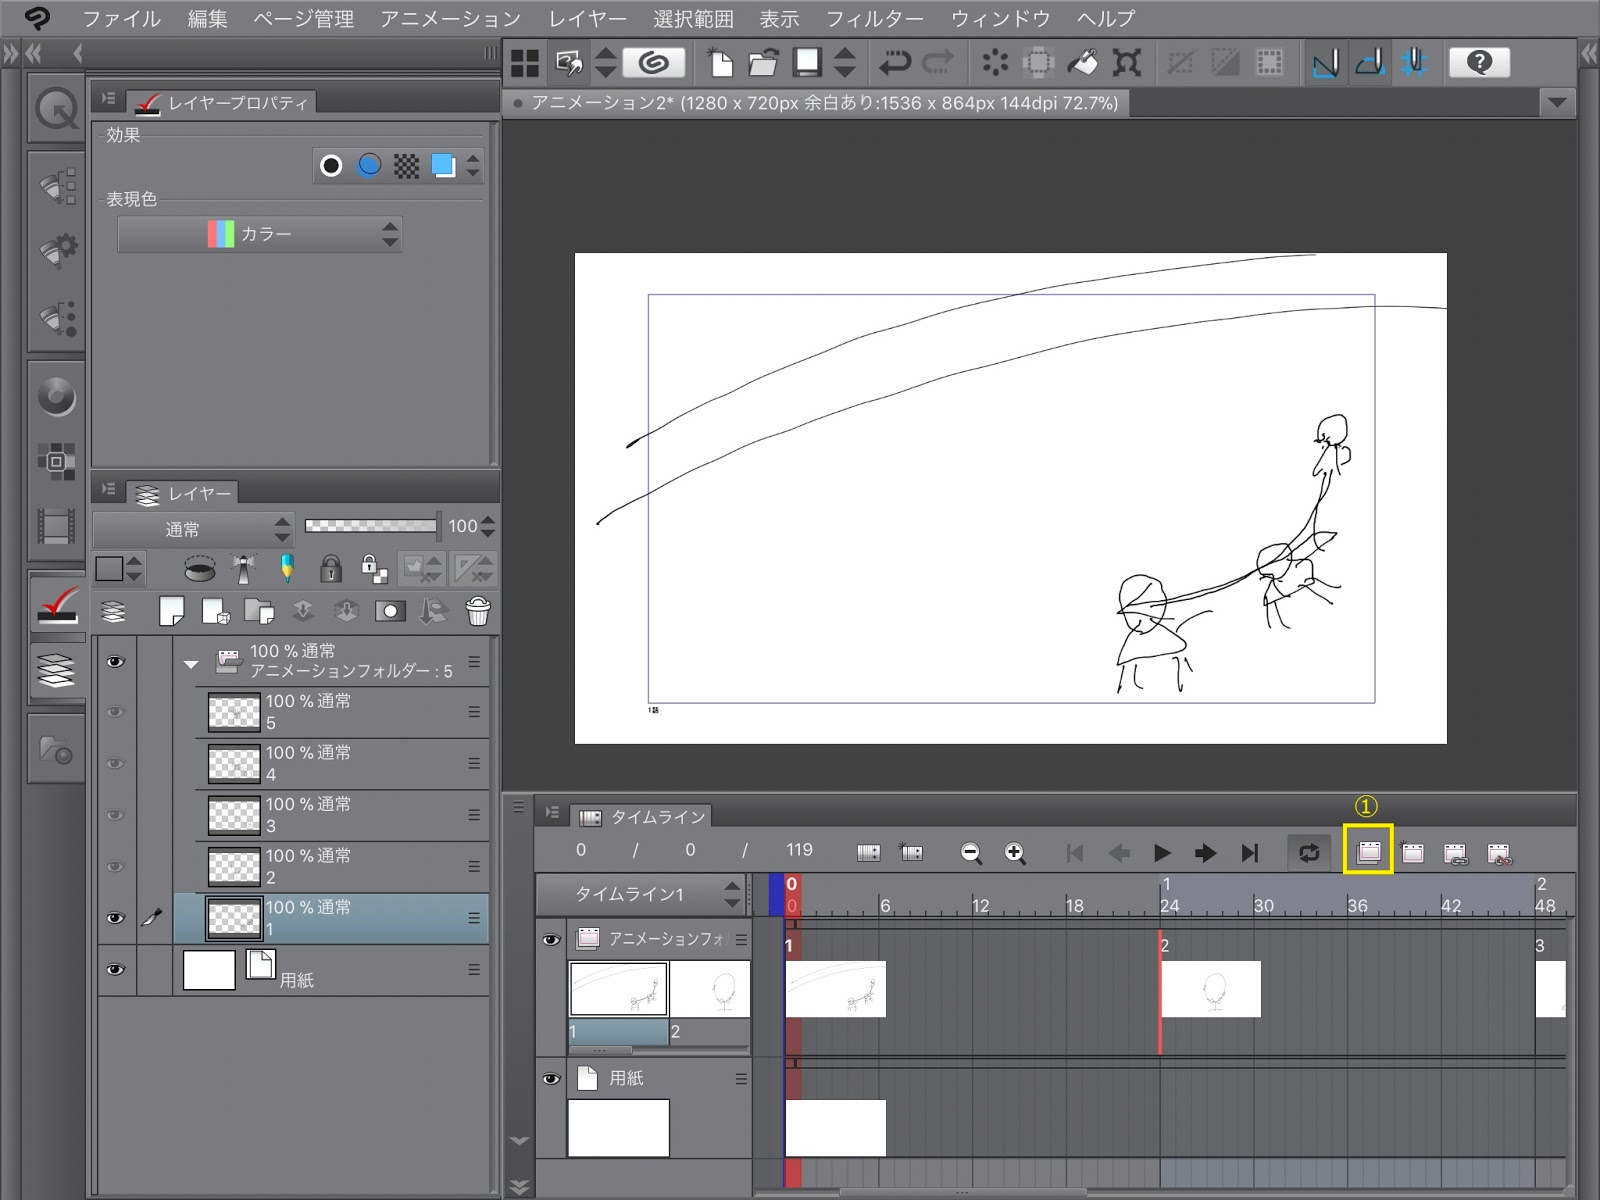 アニメ作りに挑戦 Ipad版のクリップスタジオペイントでアニメを作ろう５ ラフを描く